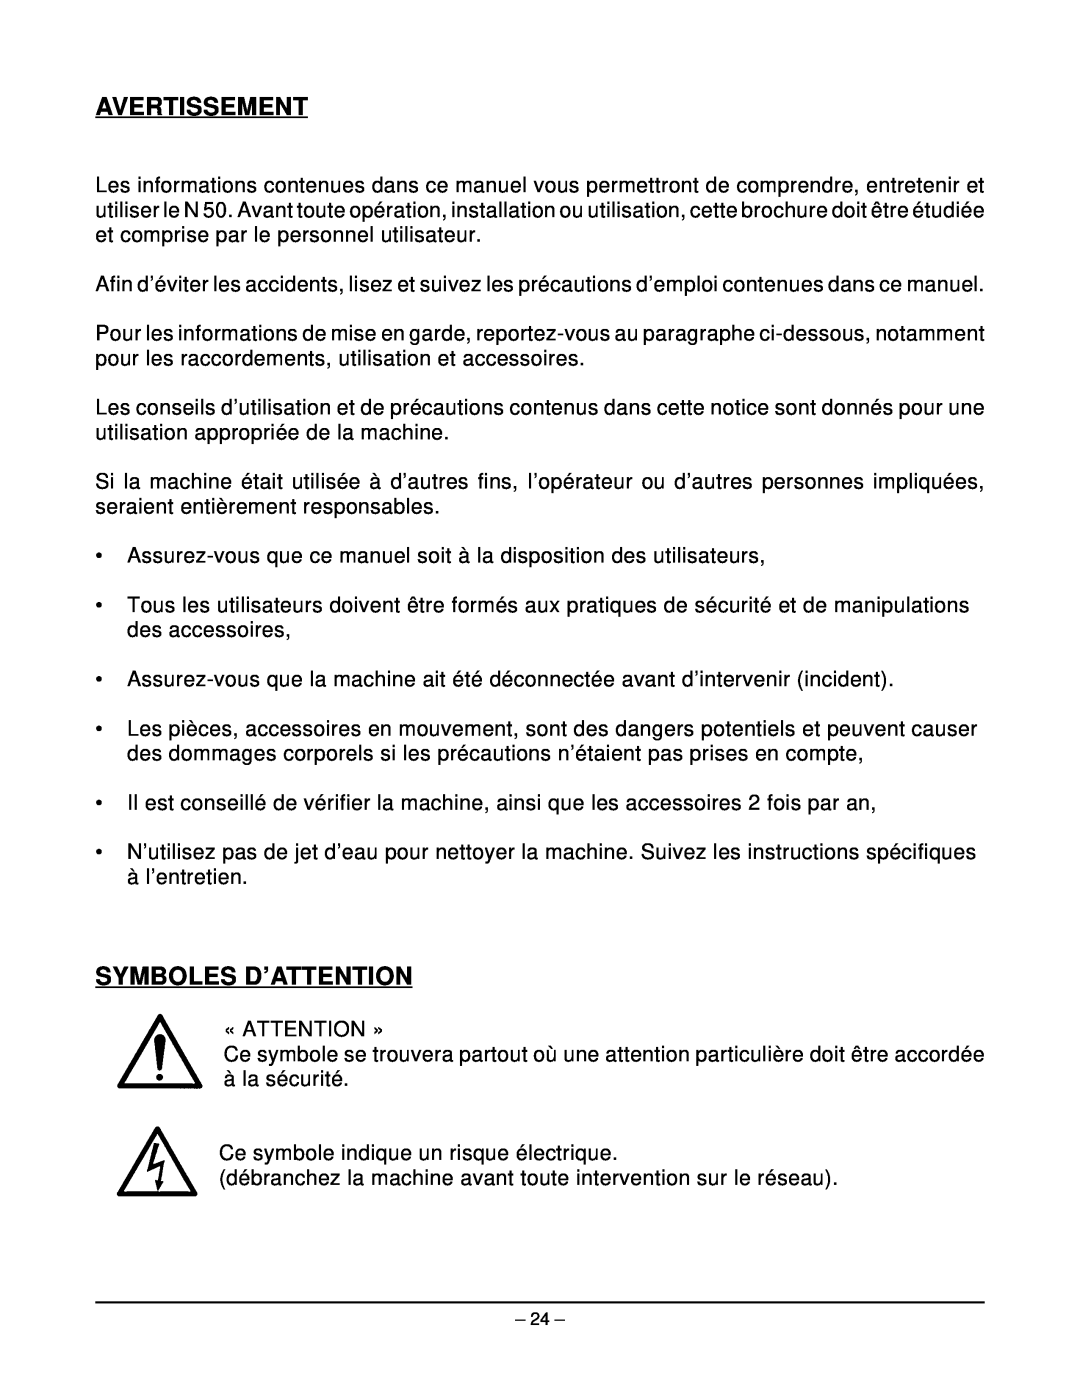 Hobart N50 MIXER manual Avertissement, Symboles D’Attention 